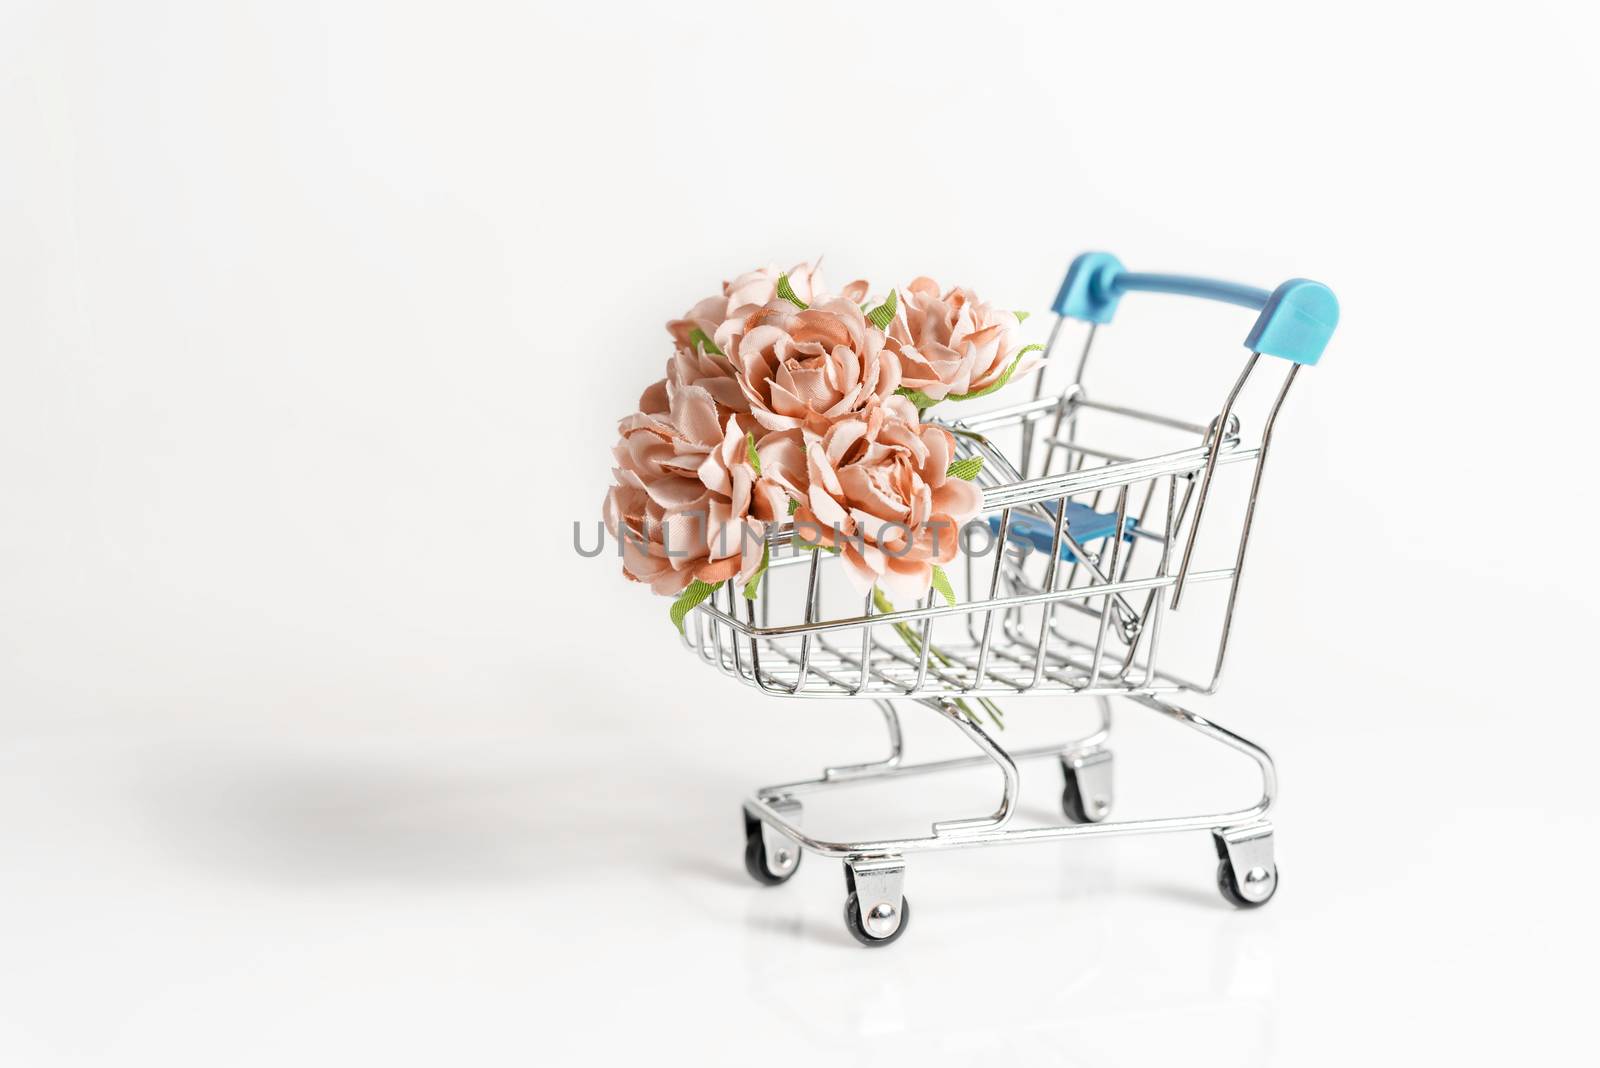 shopping cart full of roses flower on white background